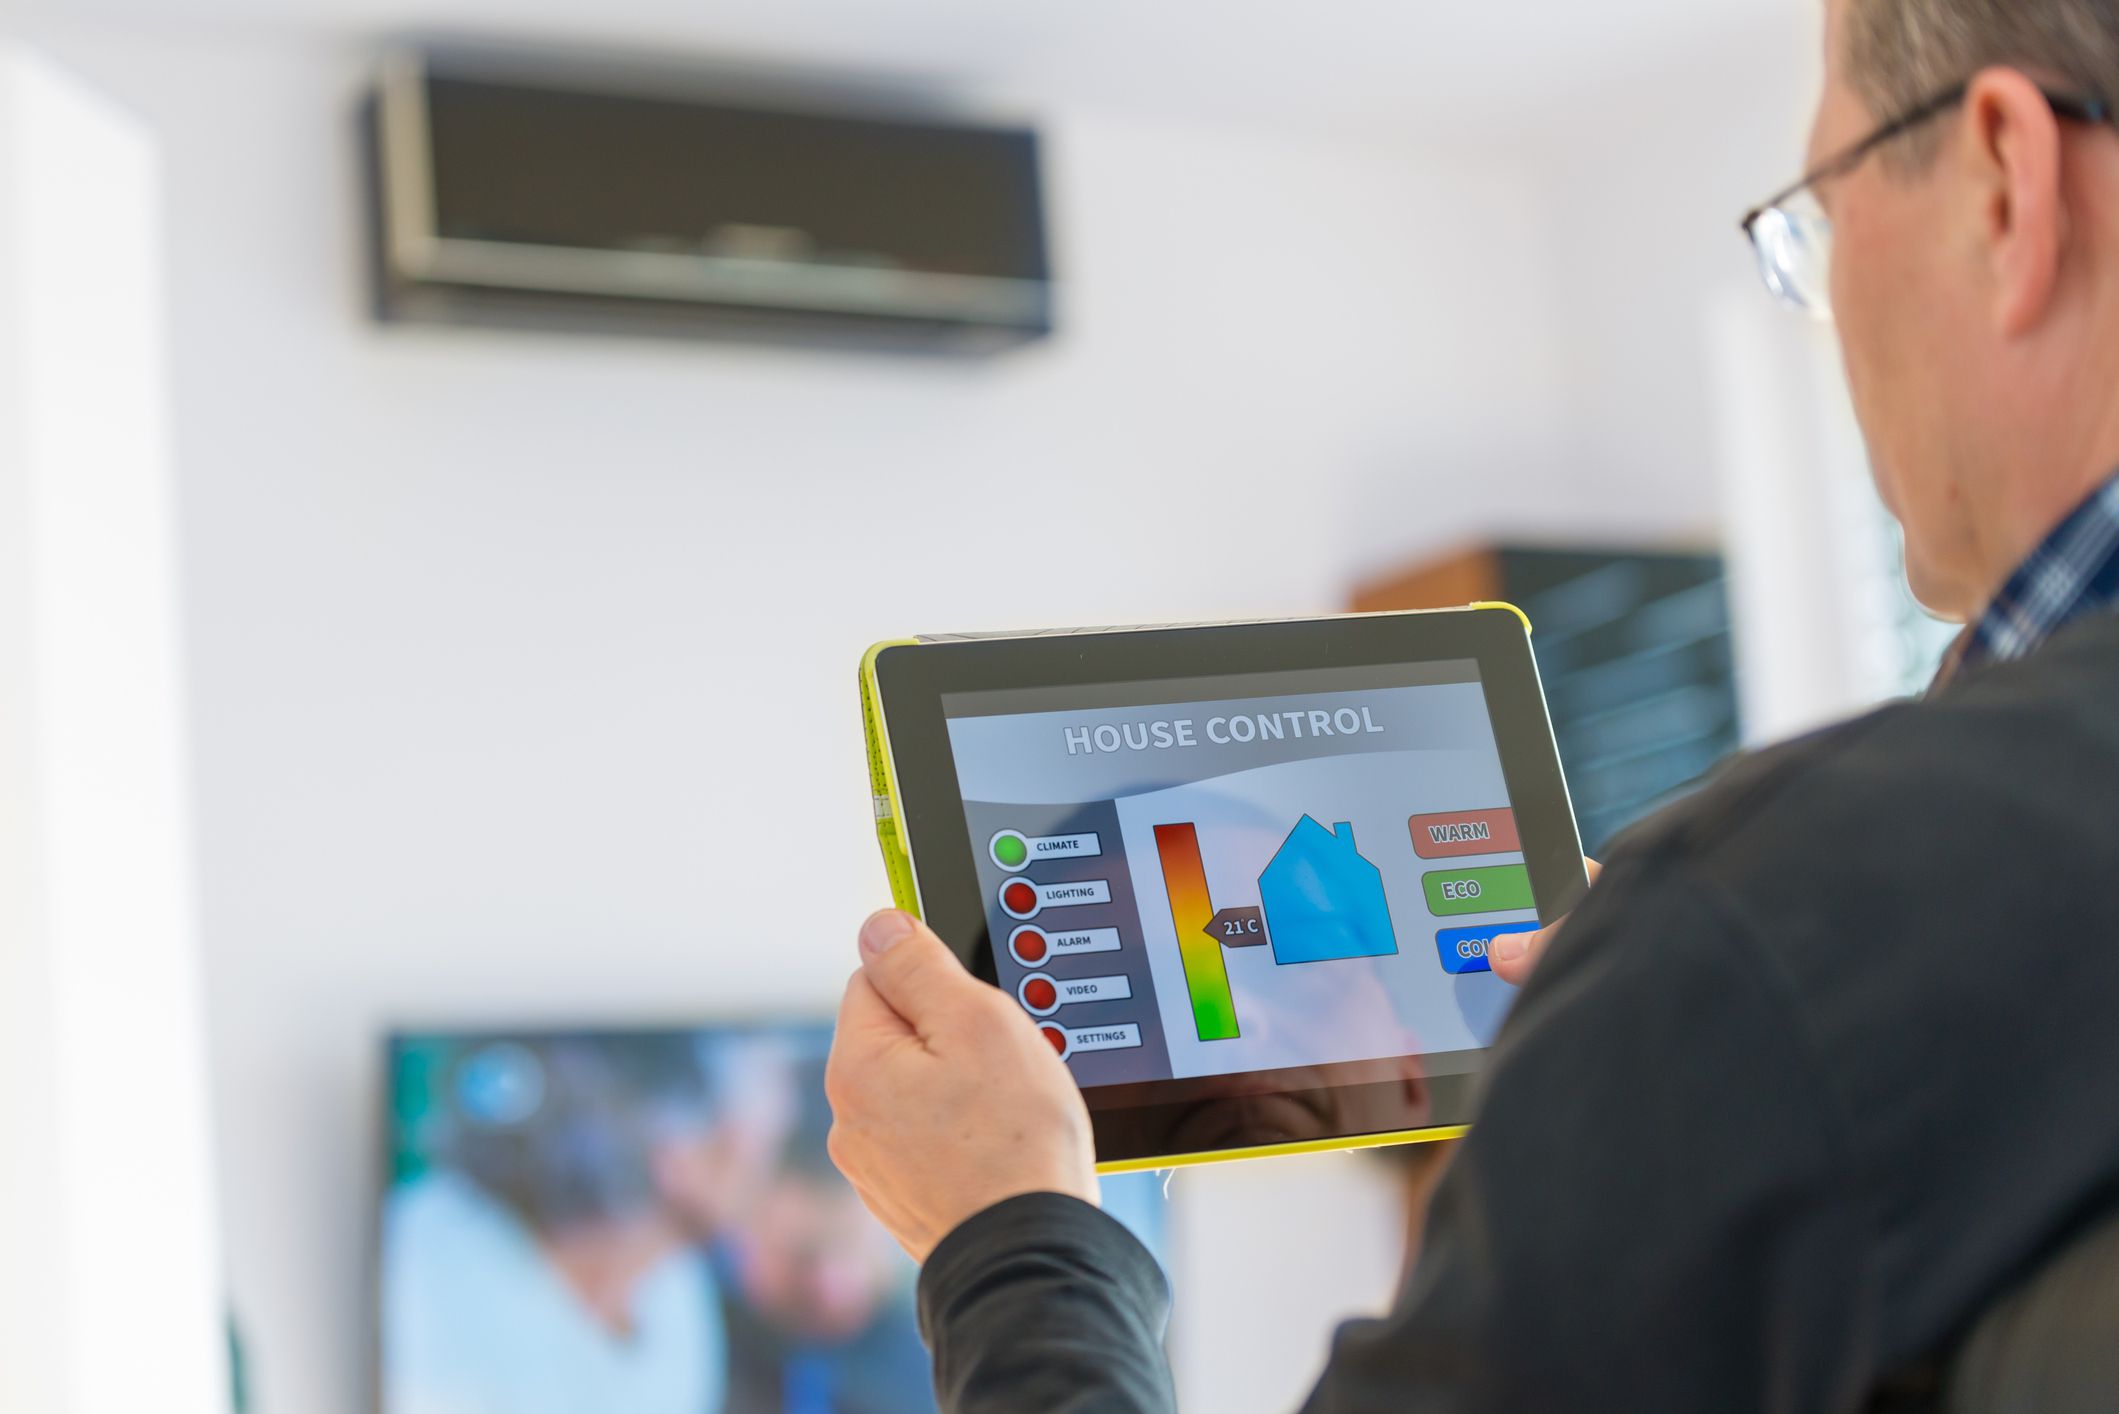 Majitel domu pomocí tabletu ovládá inteligentní klimatizaci ve své domácnosti